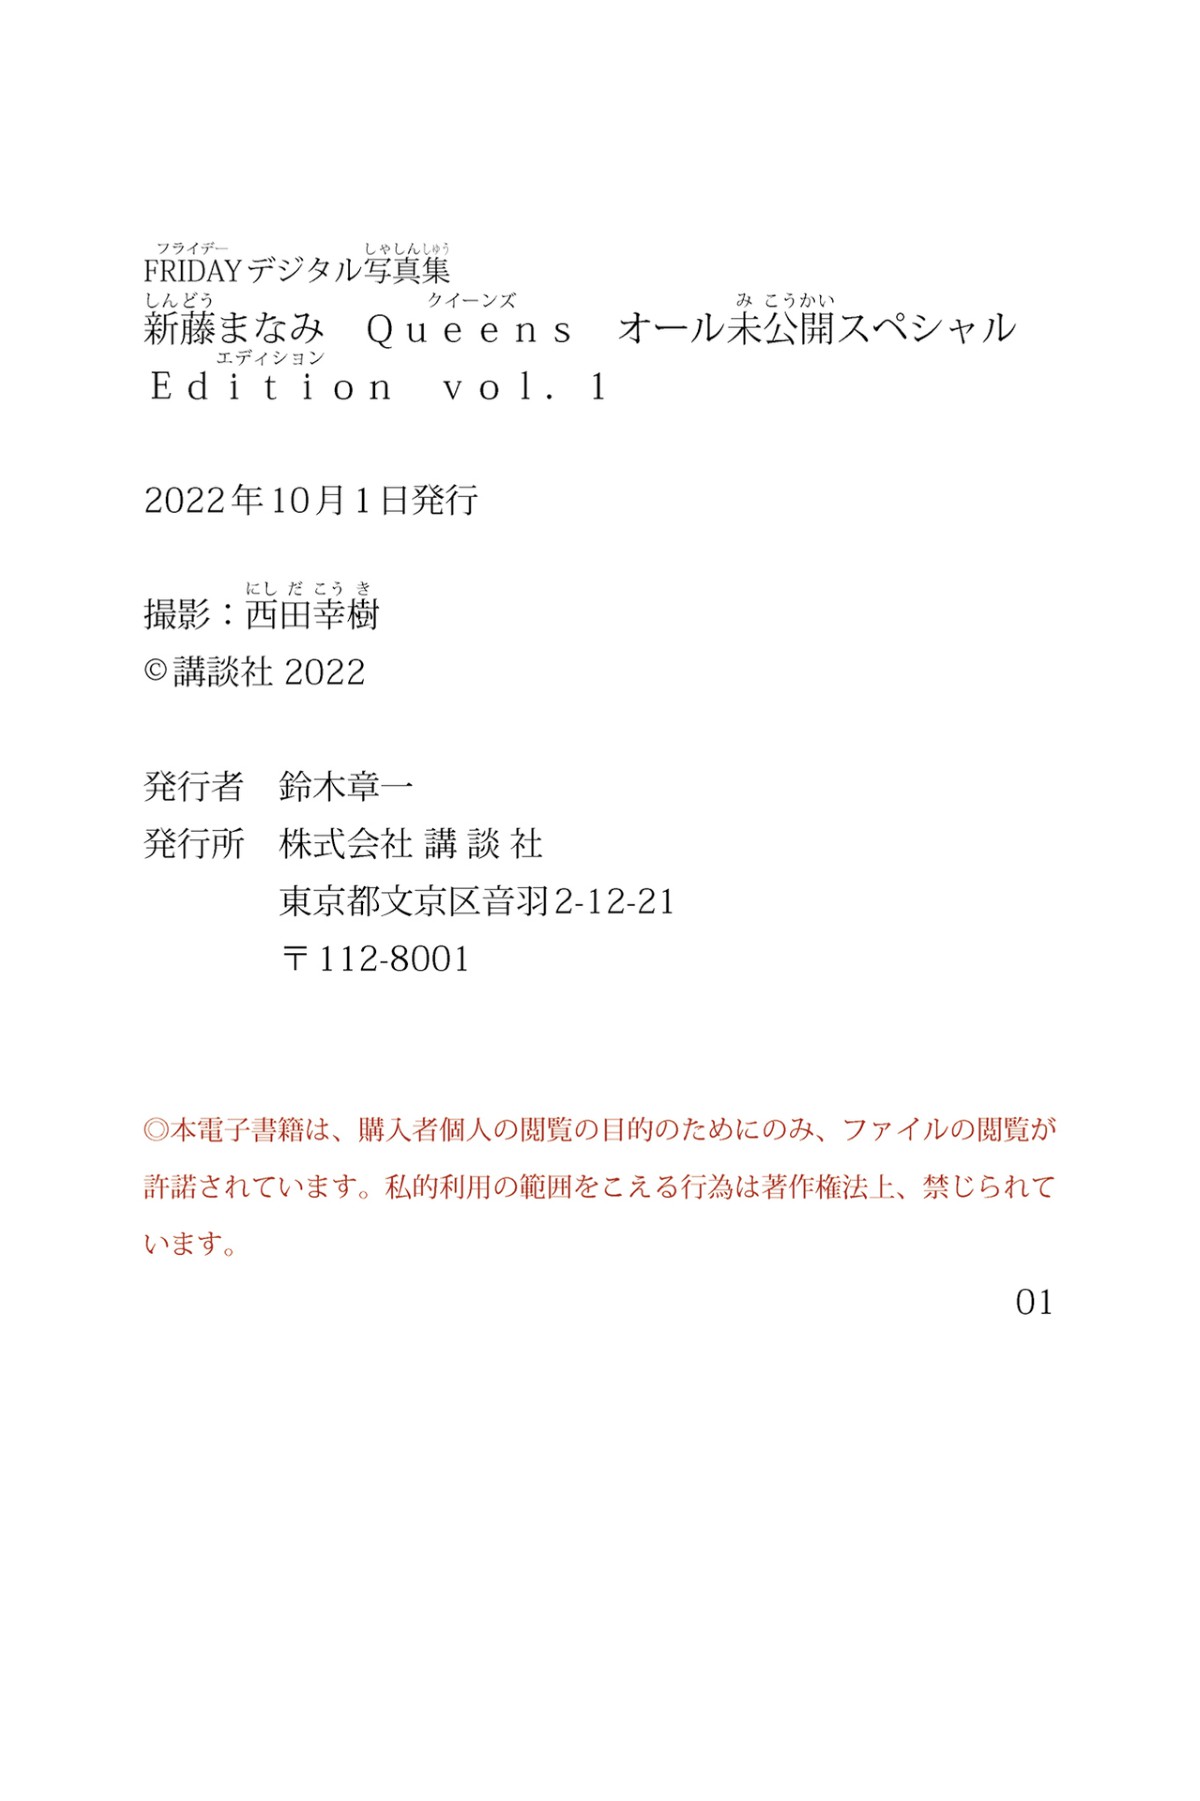 Photobook 2022 09 30 Manami Shindo 新藤まなみ Queens All Unreleased Special Edition Vol 001 0063 6849600032.jpg